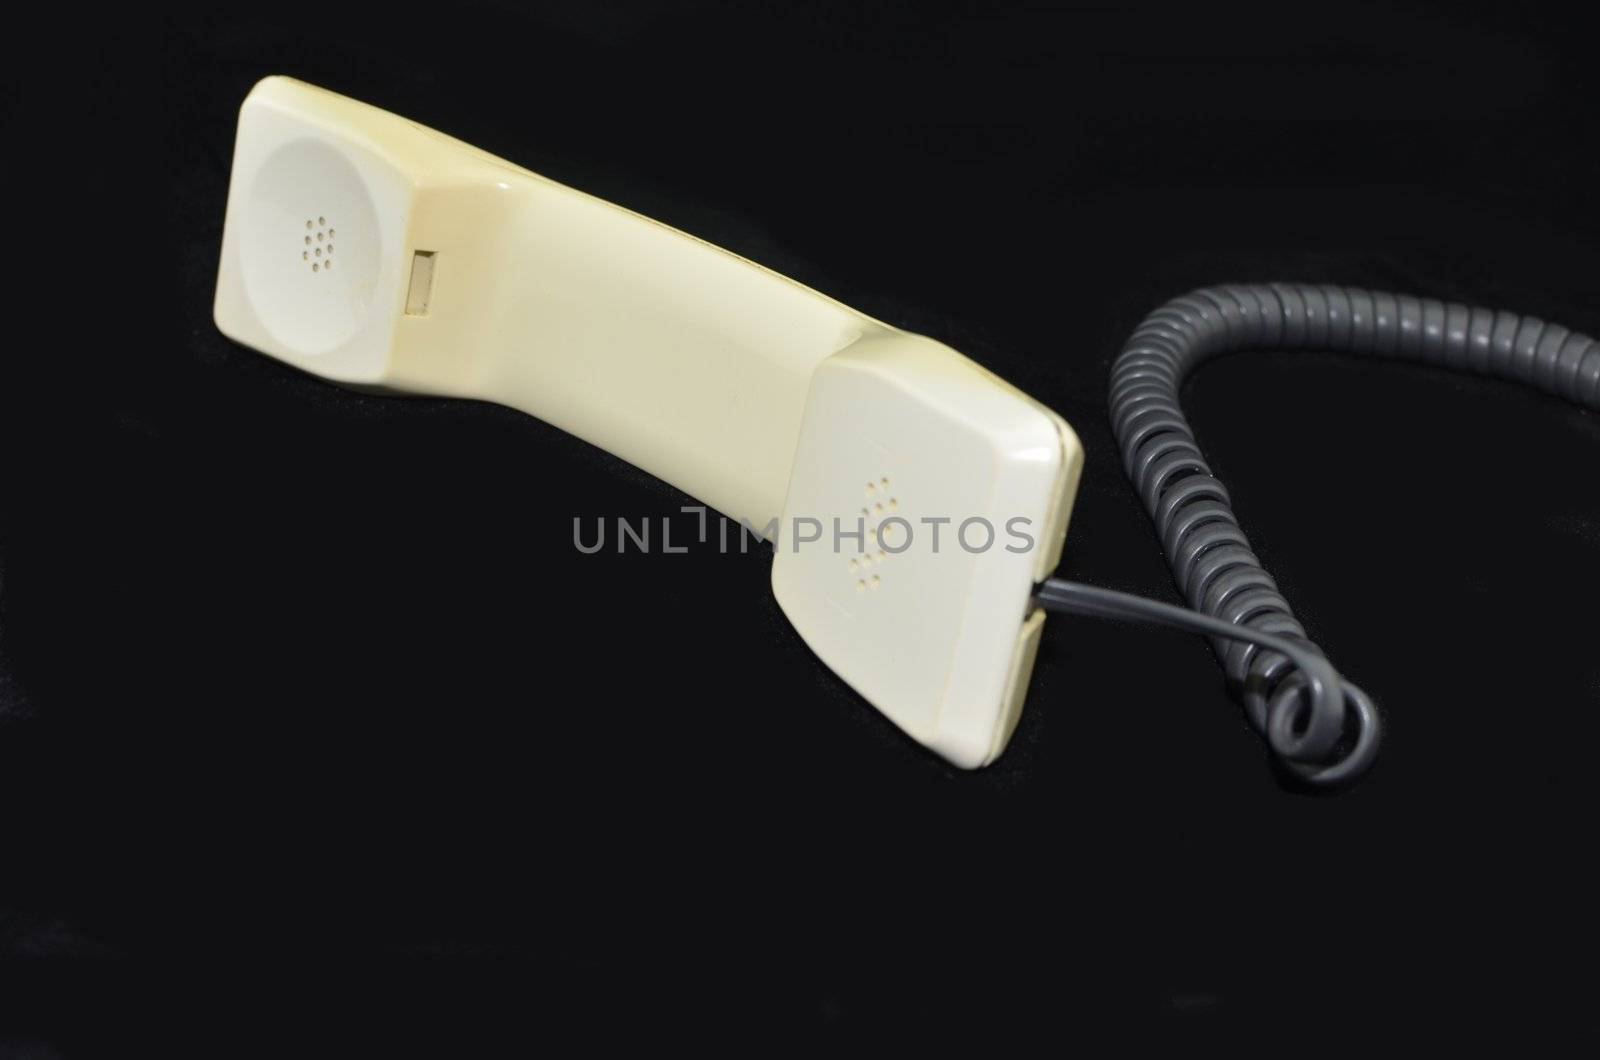 Telephone handset by ianmck